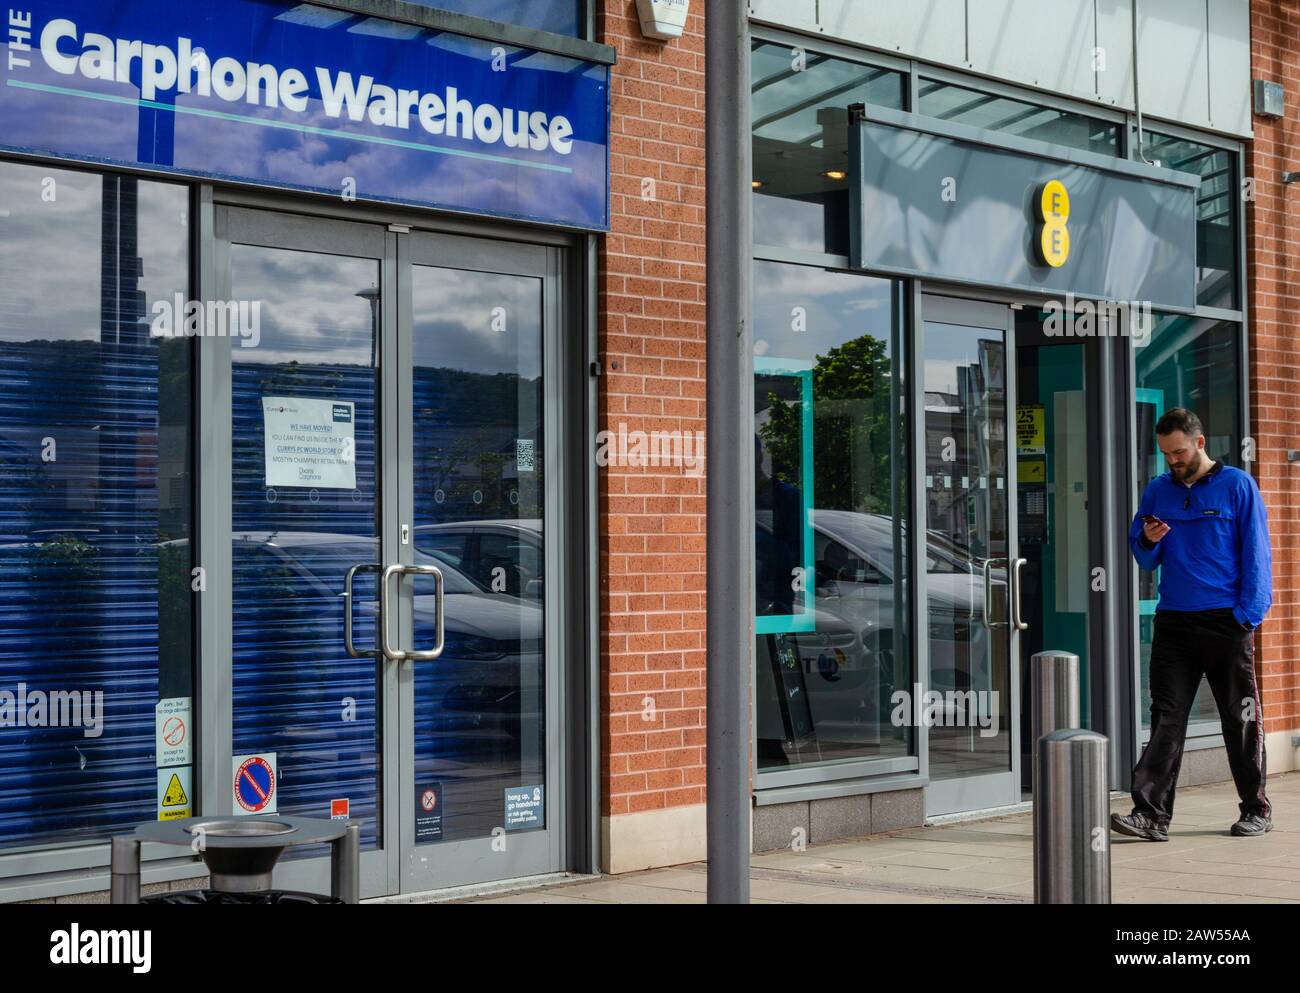 Llanddudno, Regno Unito: 06 maggio 2019: Un uomo controlla il suo telefono cellulare mentre cammina oltre un negozio di telefonia mobile EE aperto. Accanto c'è un ramo del Carphone W. Foto Stock